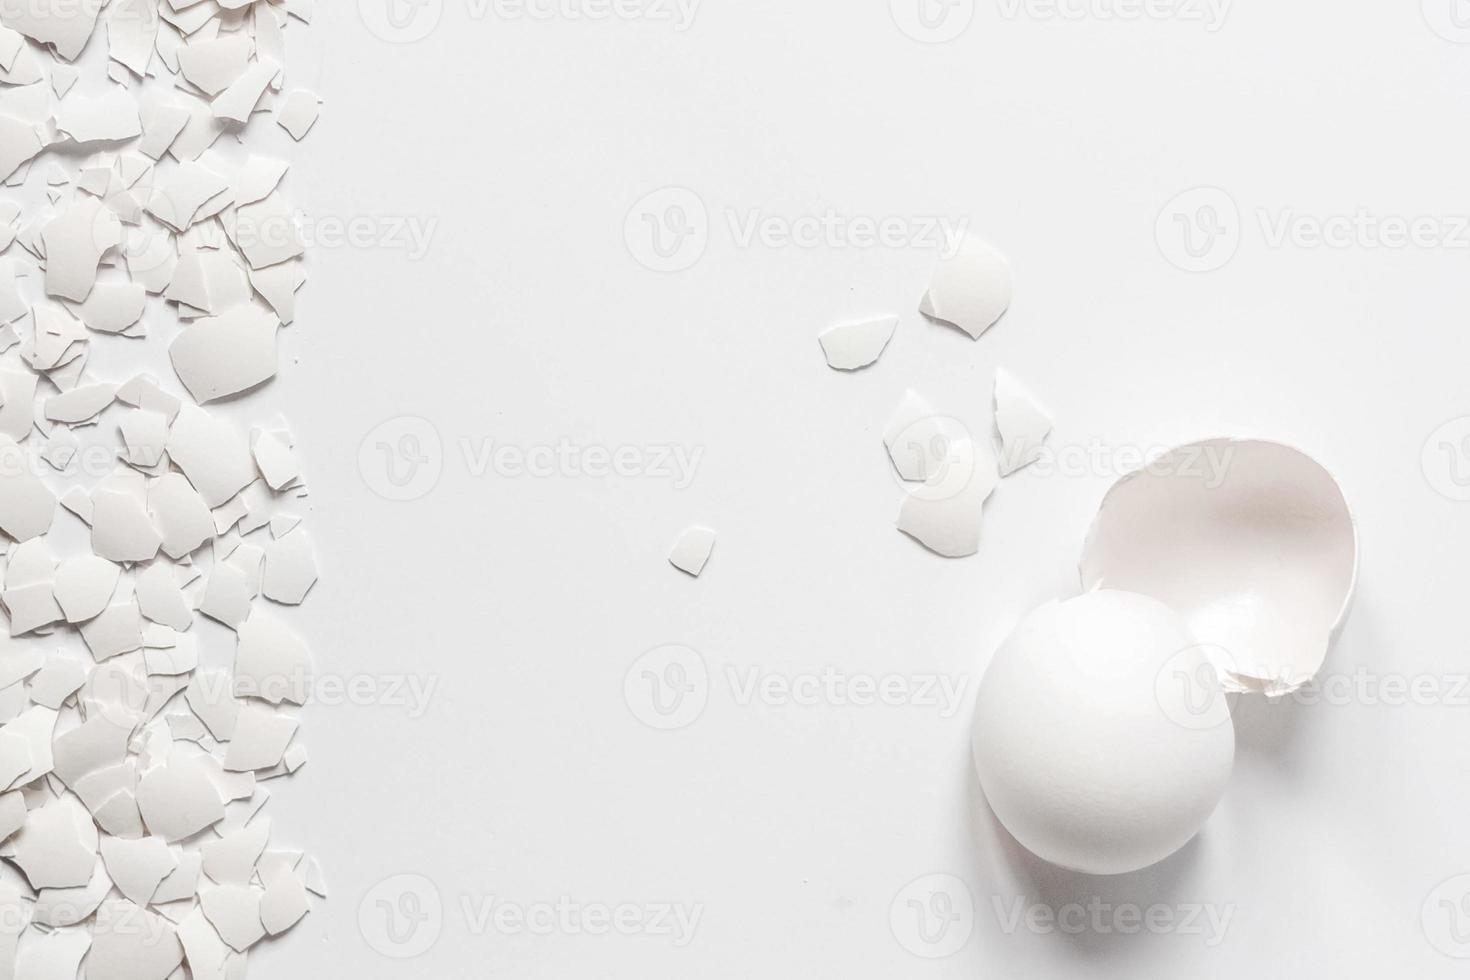 Guscio d'uovo bianco di un uovo di gallina rotto con cocci isolati su uno sfondo bianco foto